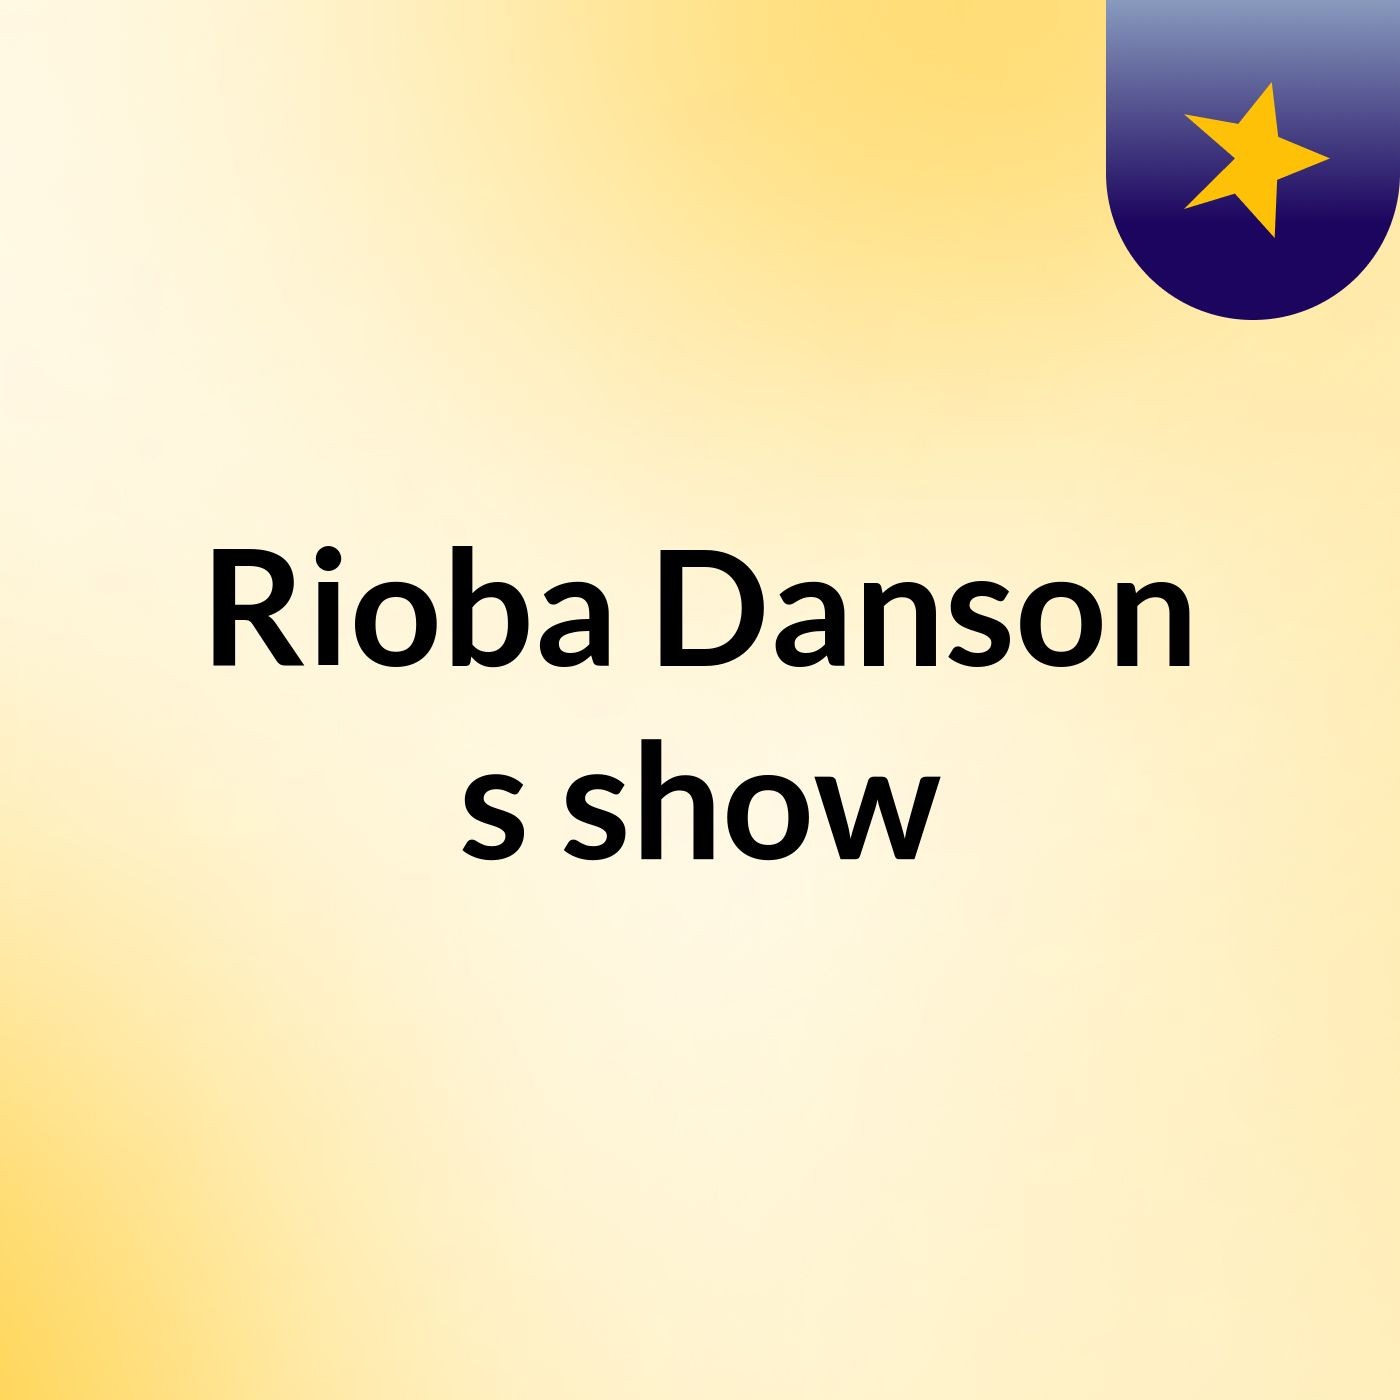 Rioba Danson's show